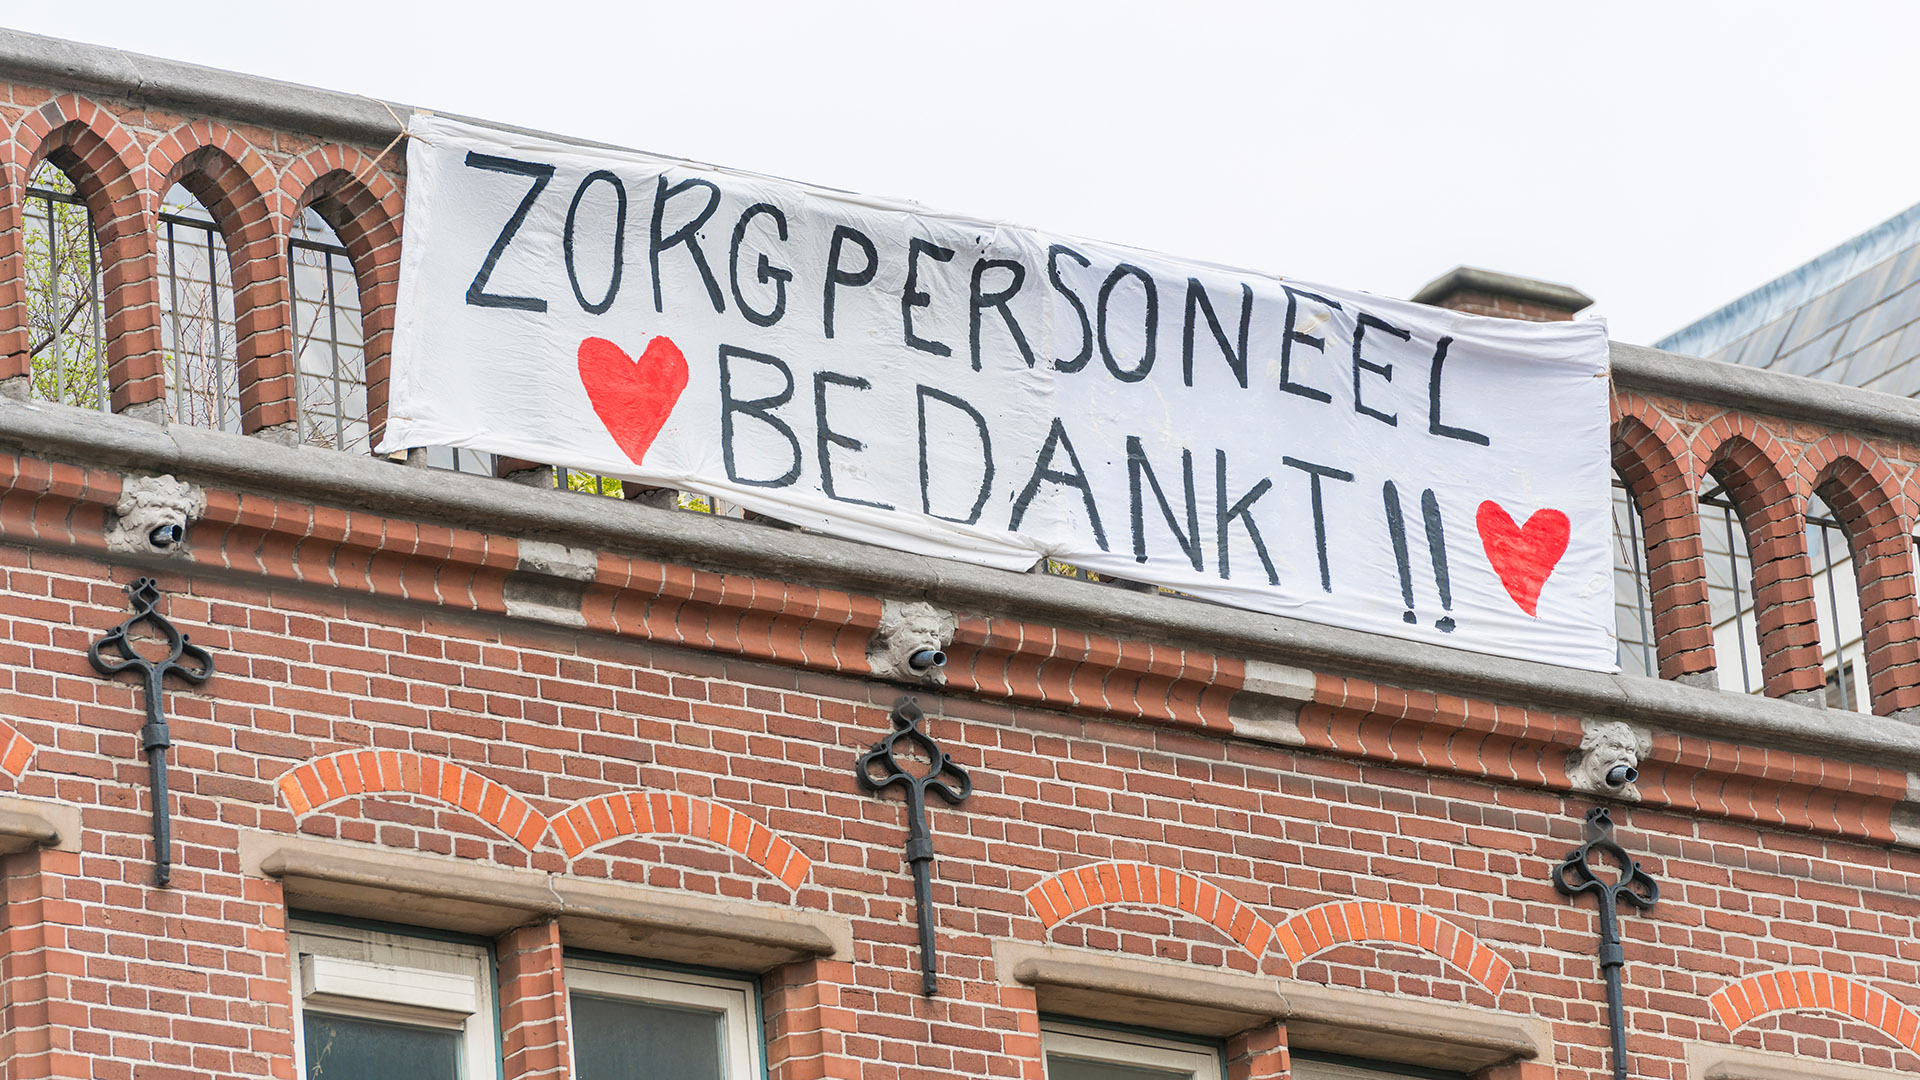 Zorgpersoneel van het OLGV in Amsterdam krijgt steun tijdens de eerste golf van de coronacrisis